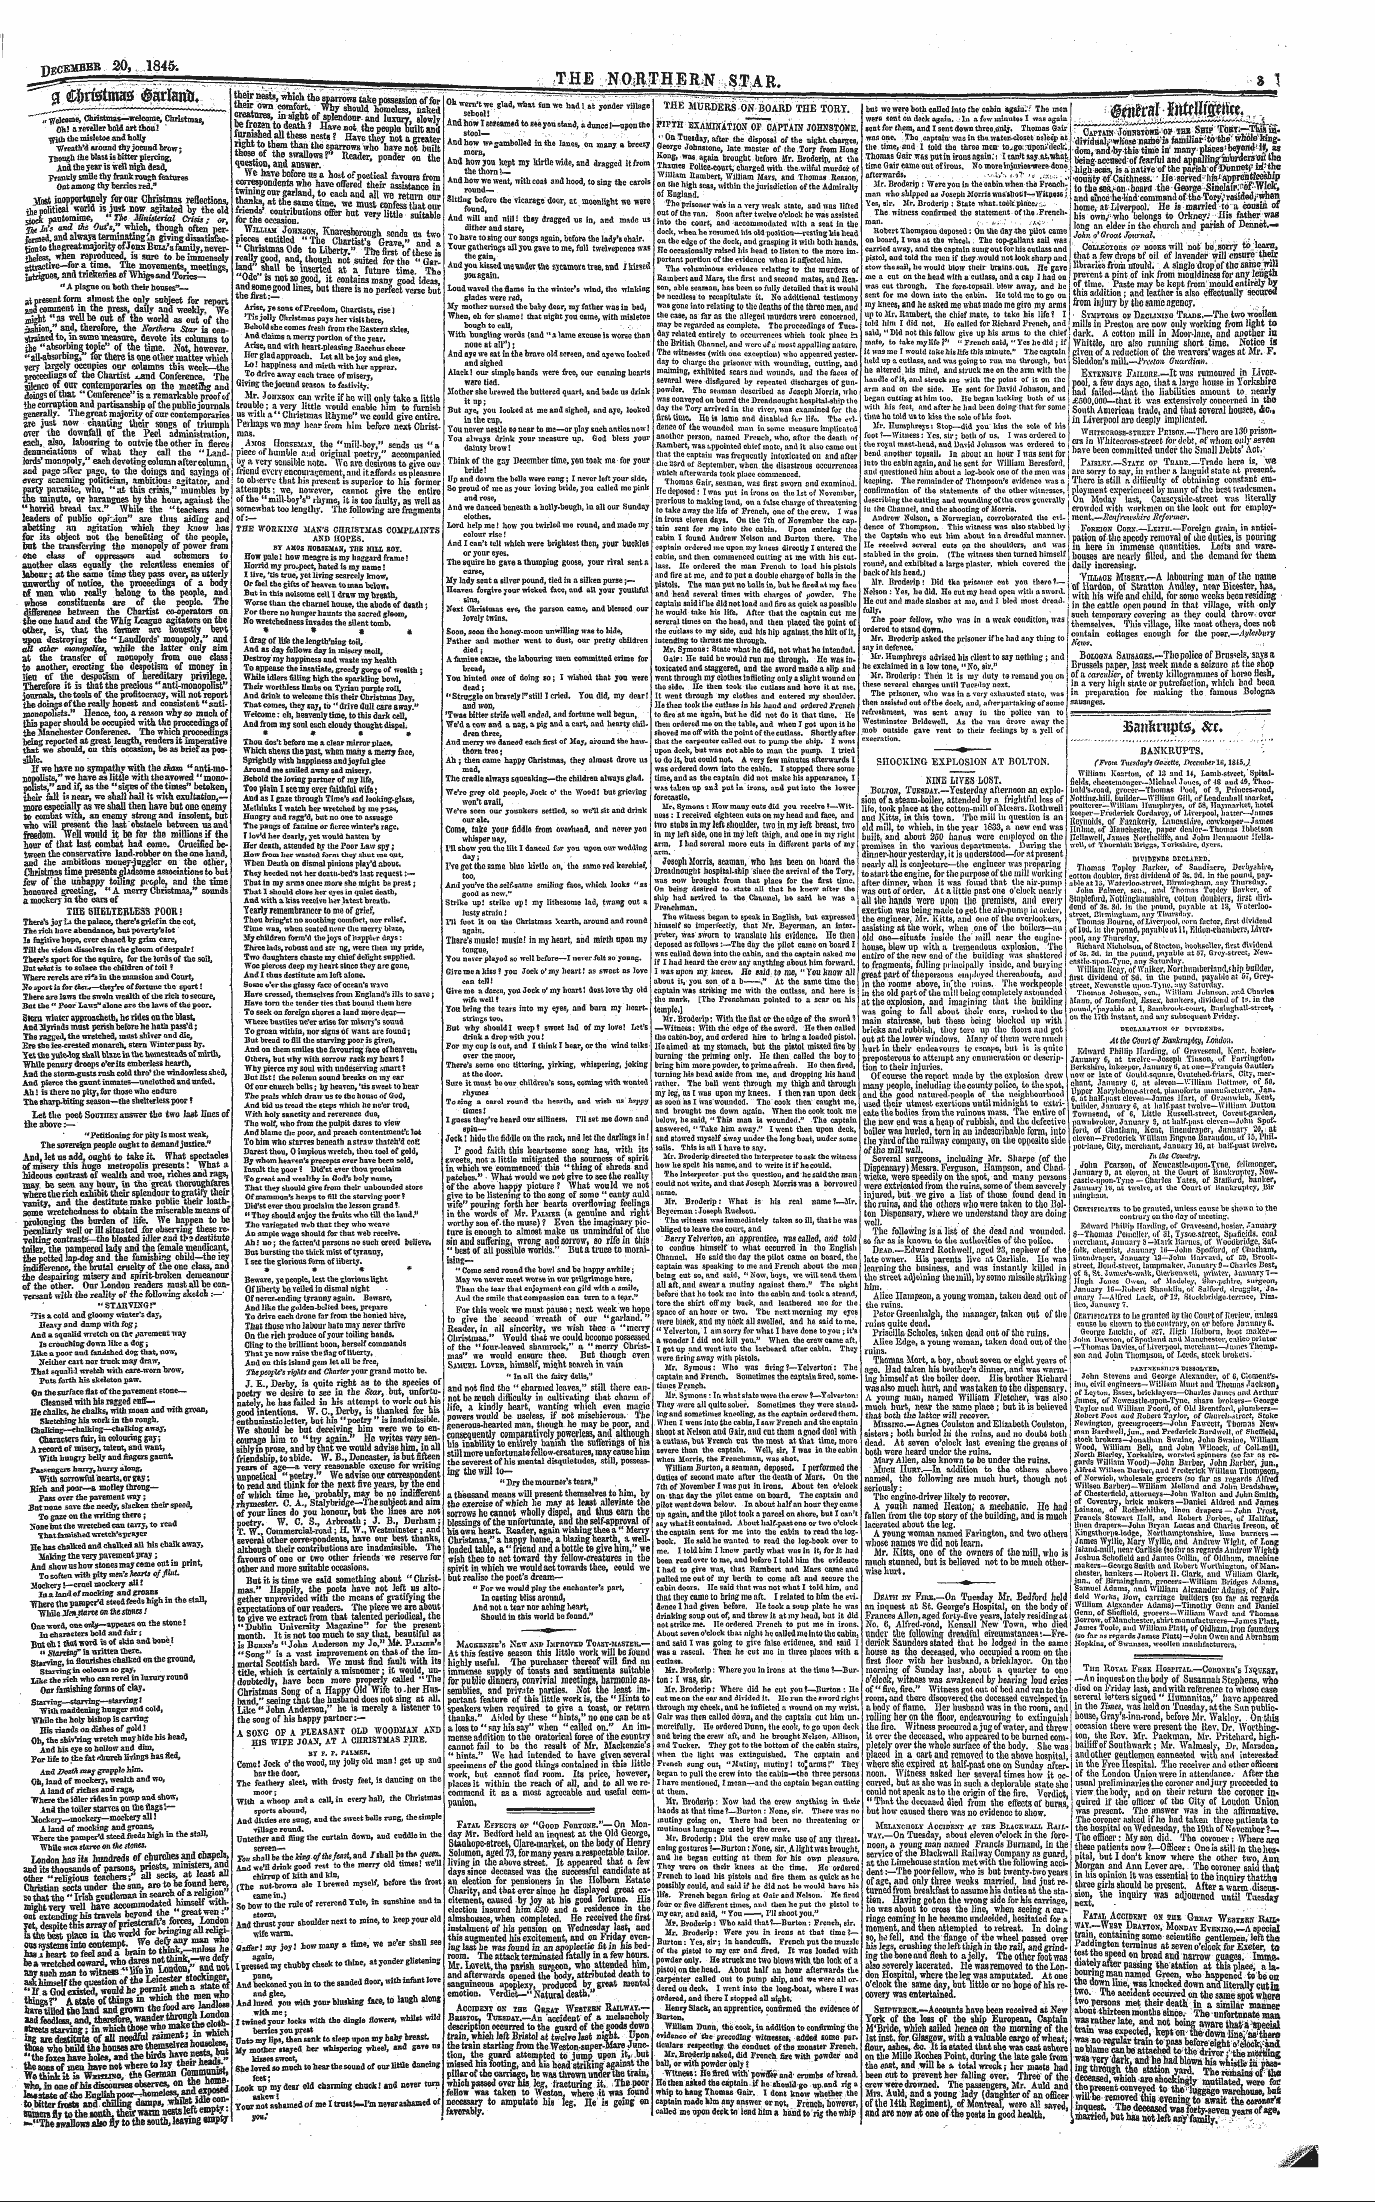 Northern Star (1837-1852): jS F Y, 4th edition - §^^:^Msb,Z R- I